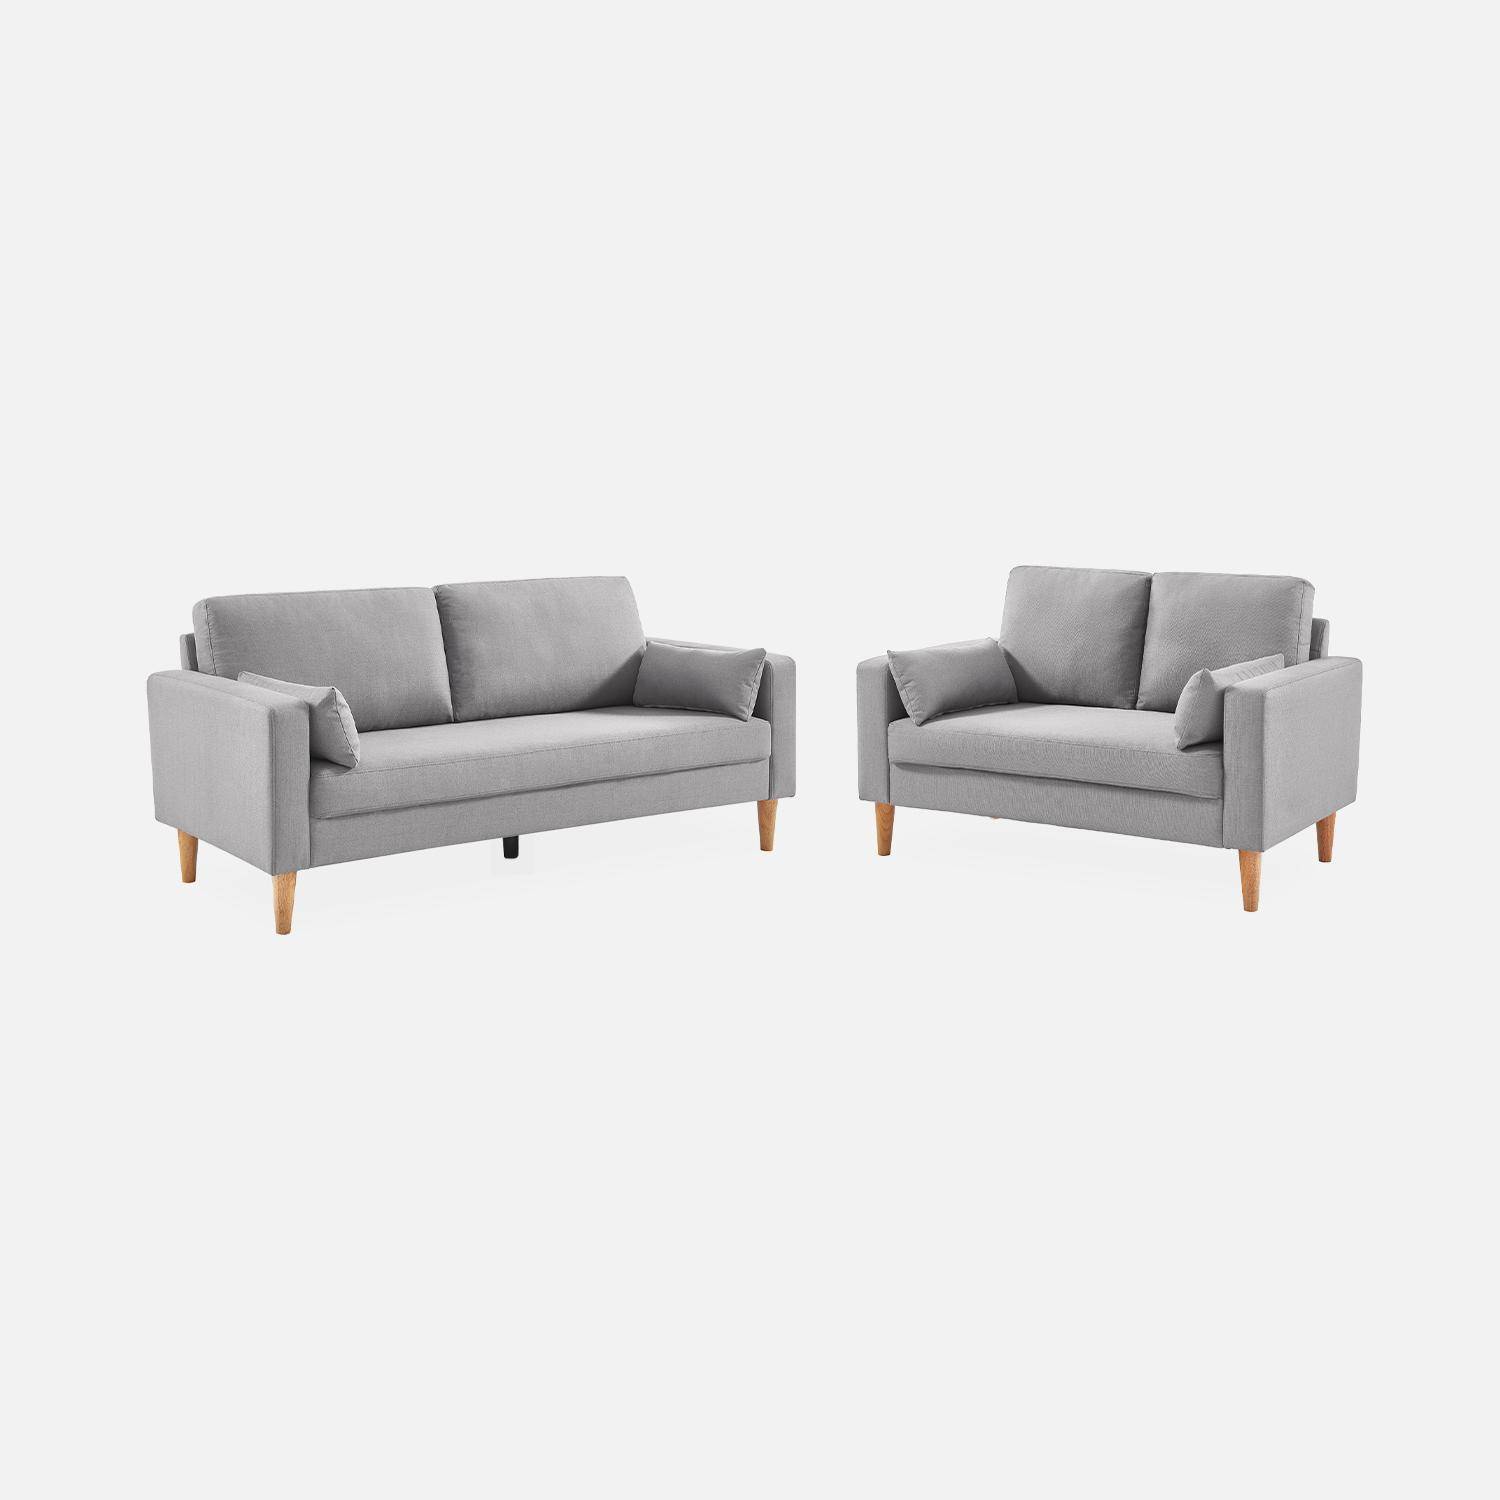 Lichtgrijze stoffen driezits sofa - Bjorn - 3-zits bank met houten poten, scandinavische stijl   Photo5